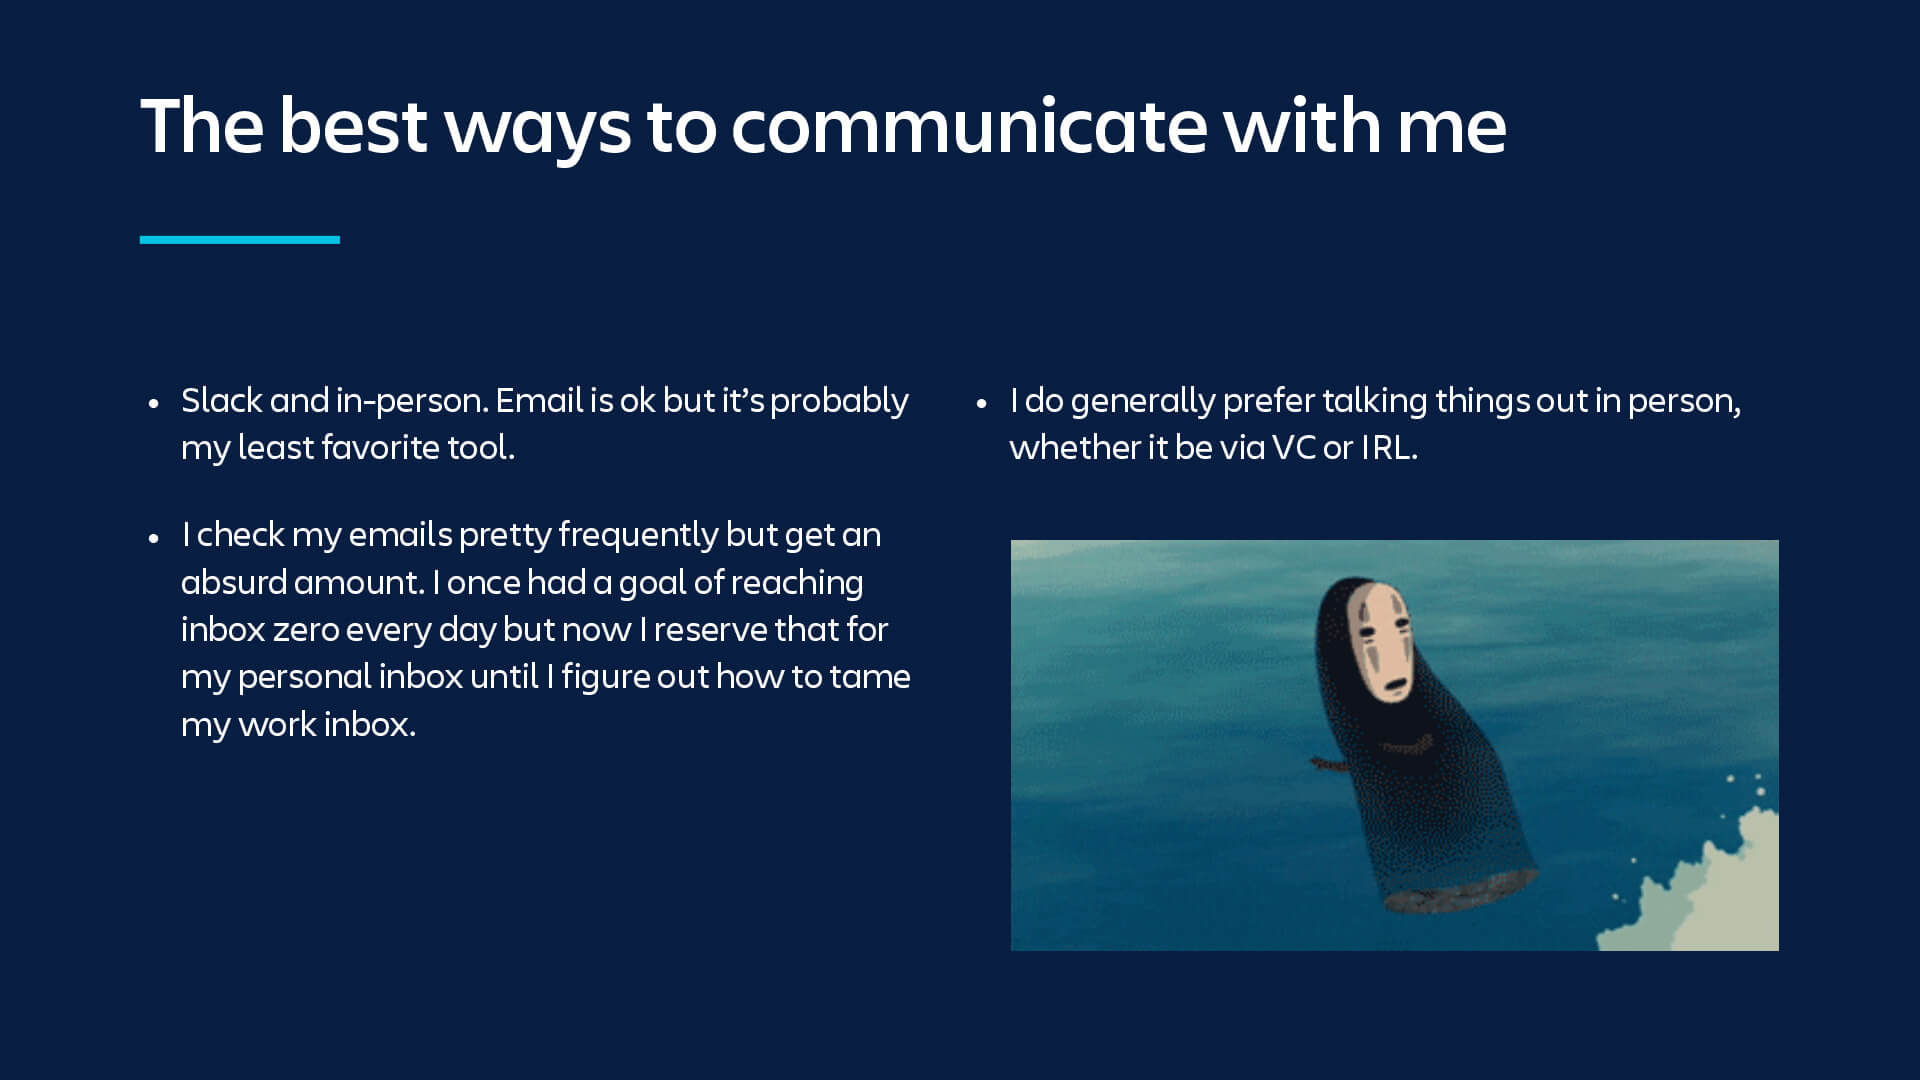 Erklärung zur besten Kommunikationsweise